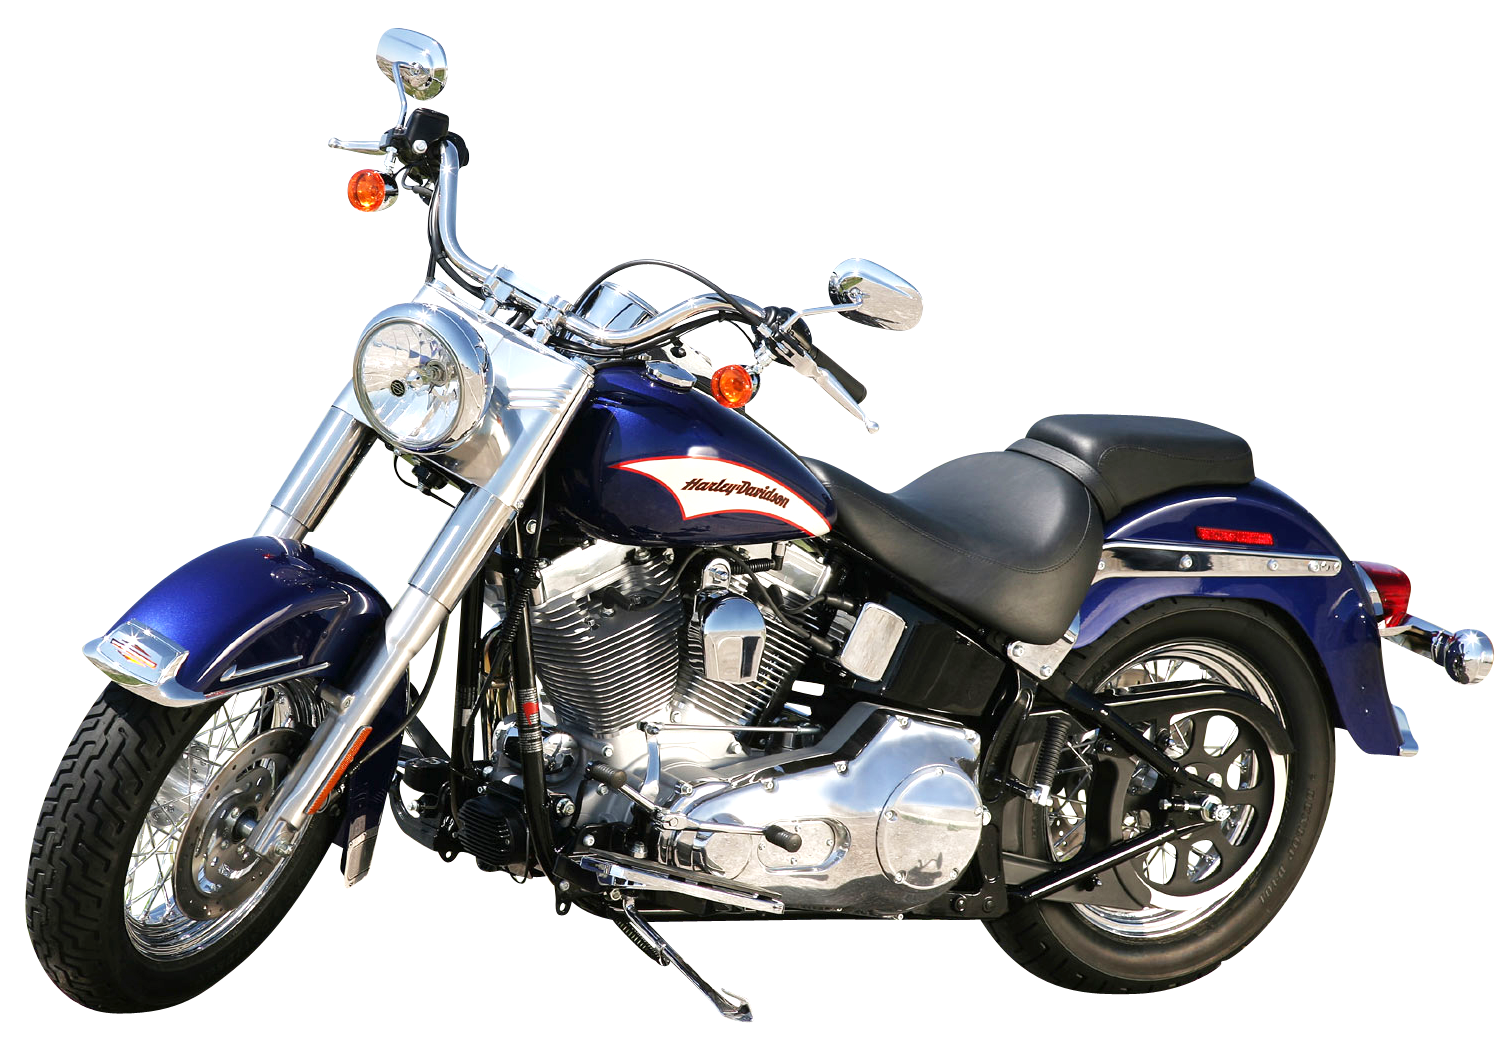 Immagine di Harley Davidson PNG con sfondo Trasparente